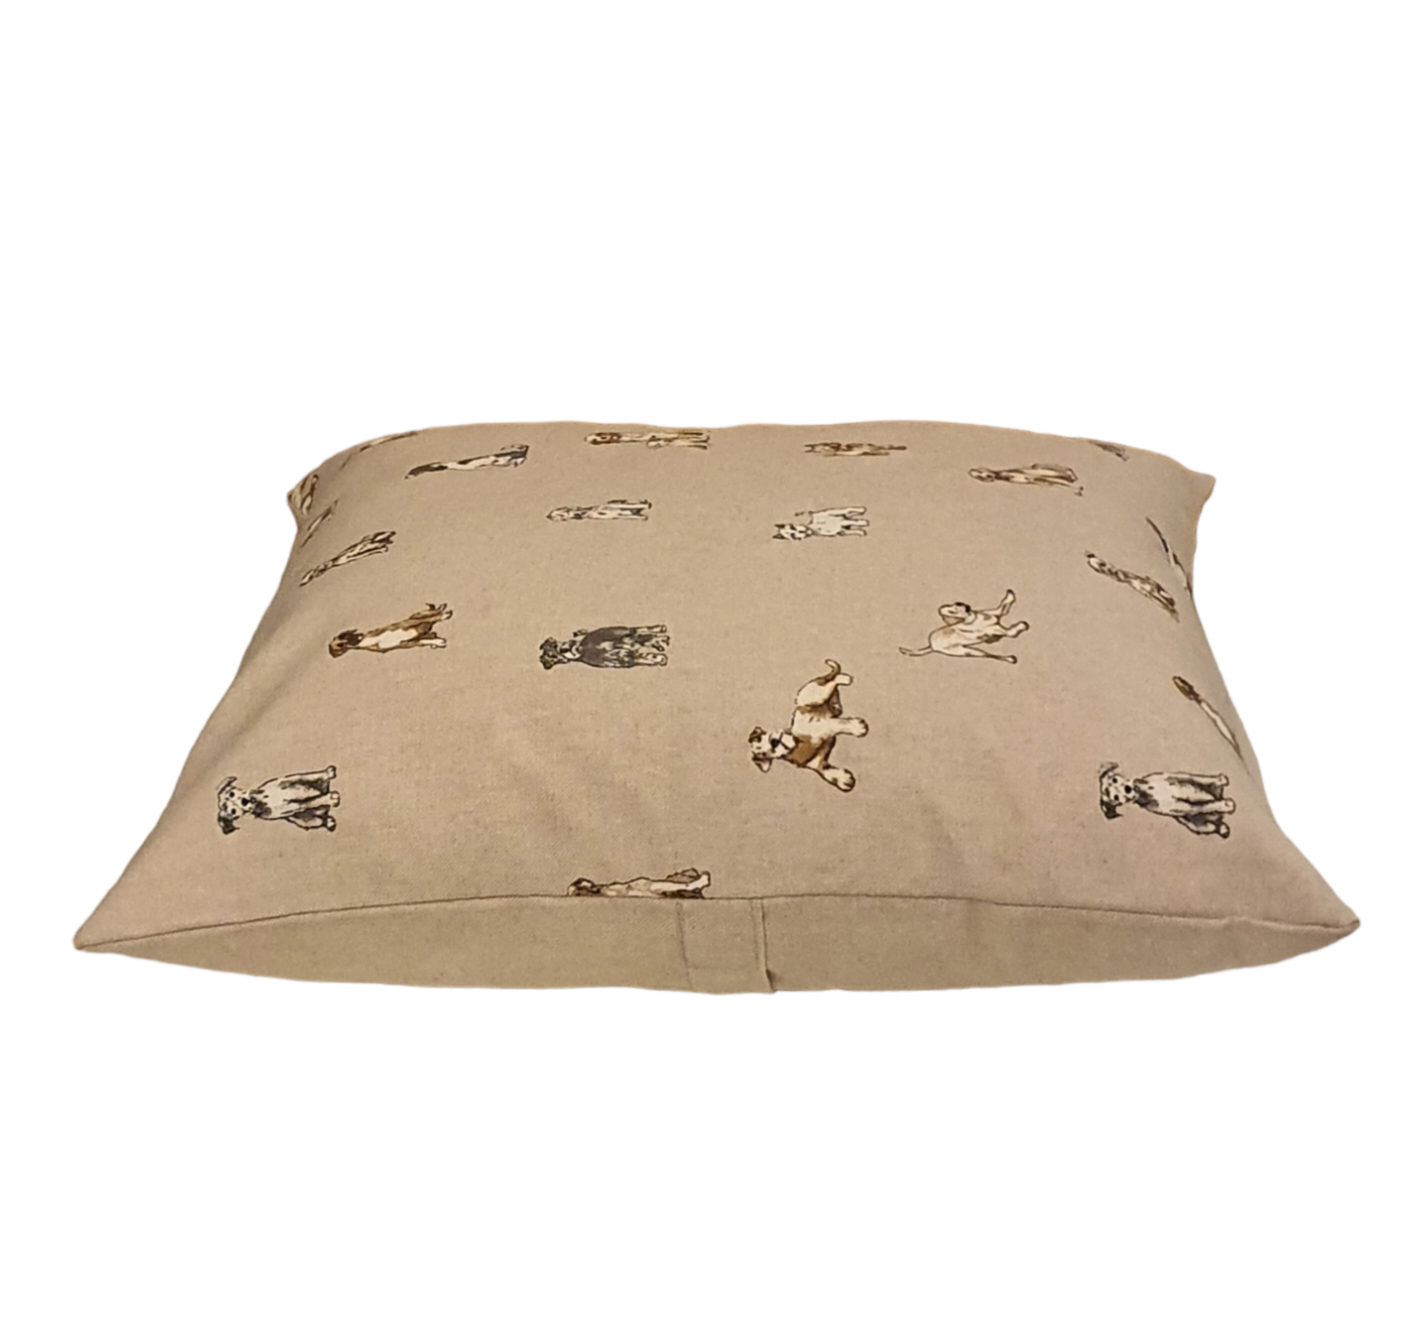 Dashing Dogs Cushion Cover - Handmade Cushion Cover (18x18)